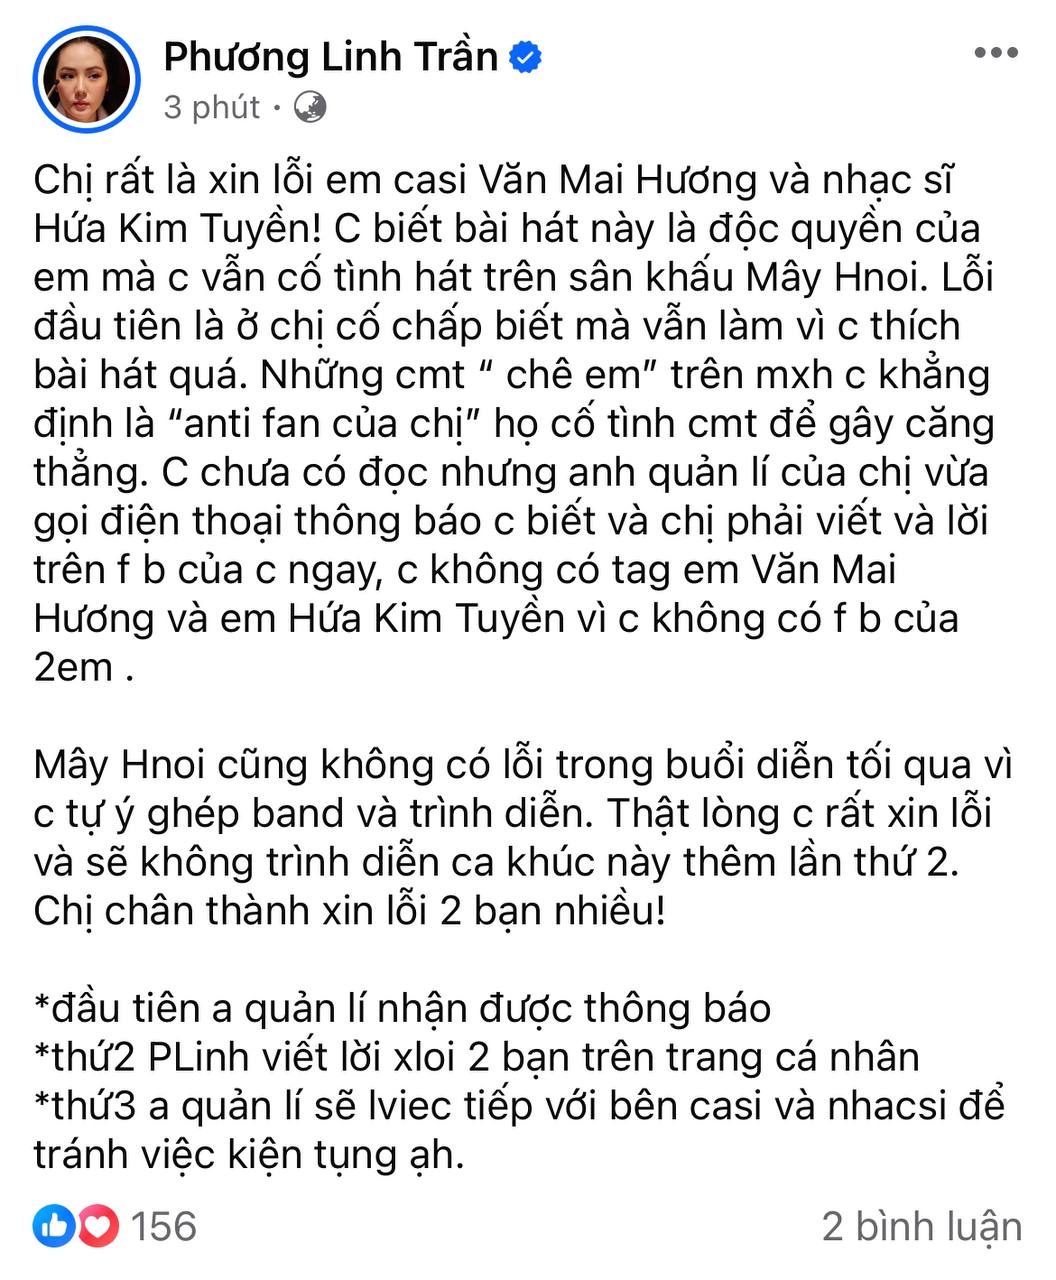 Phương Linh cố tình hát hit độc quyền của Văn Mai Hương rồi xin lỗi - Ảnh 3.